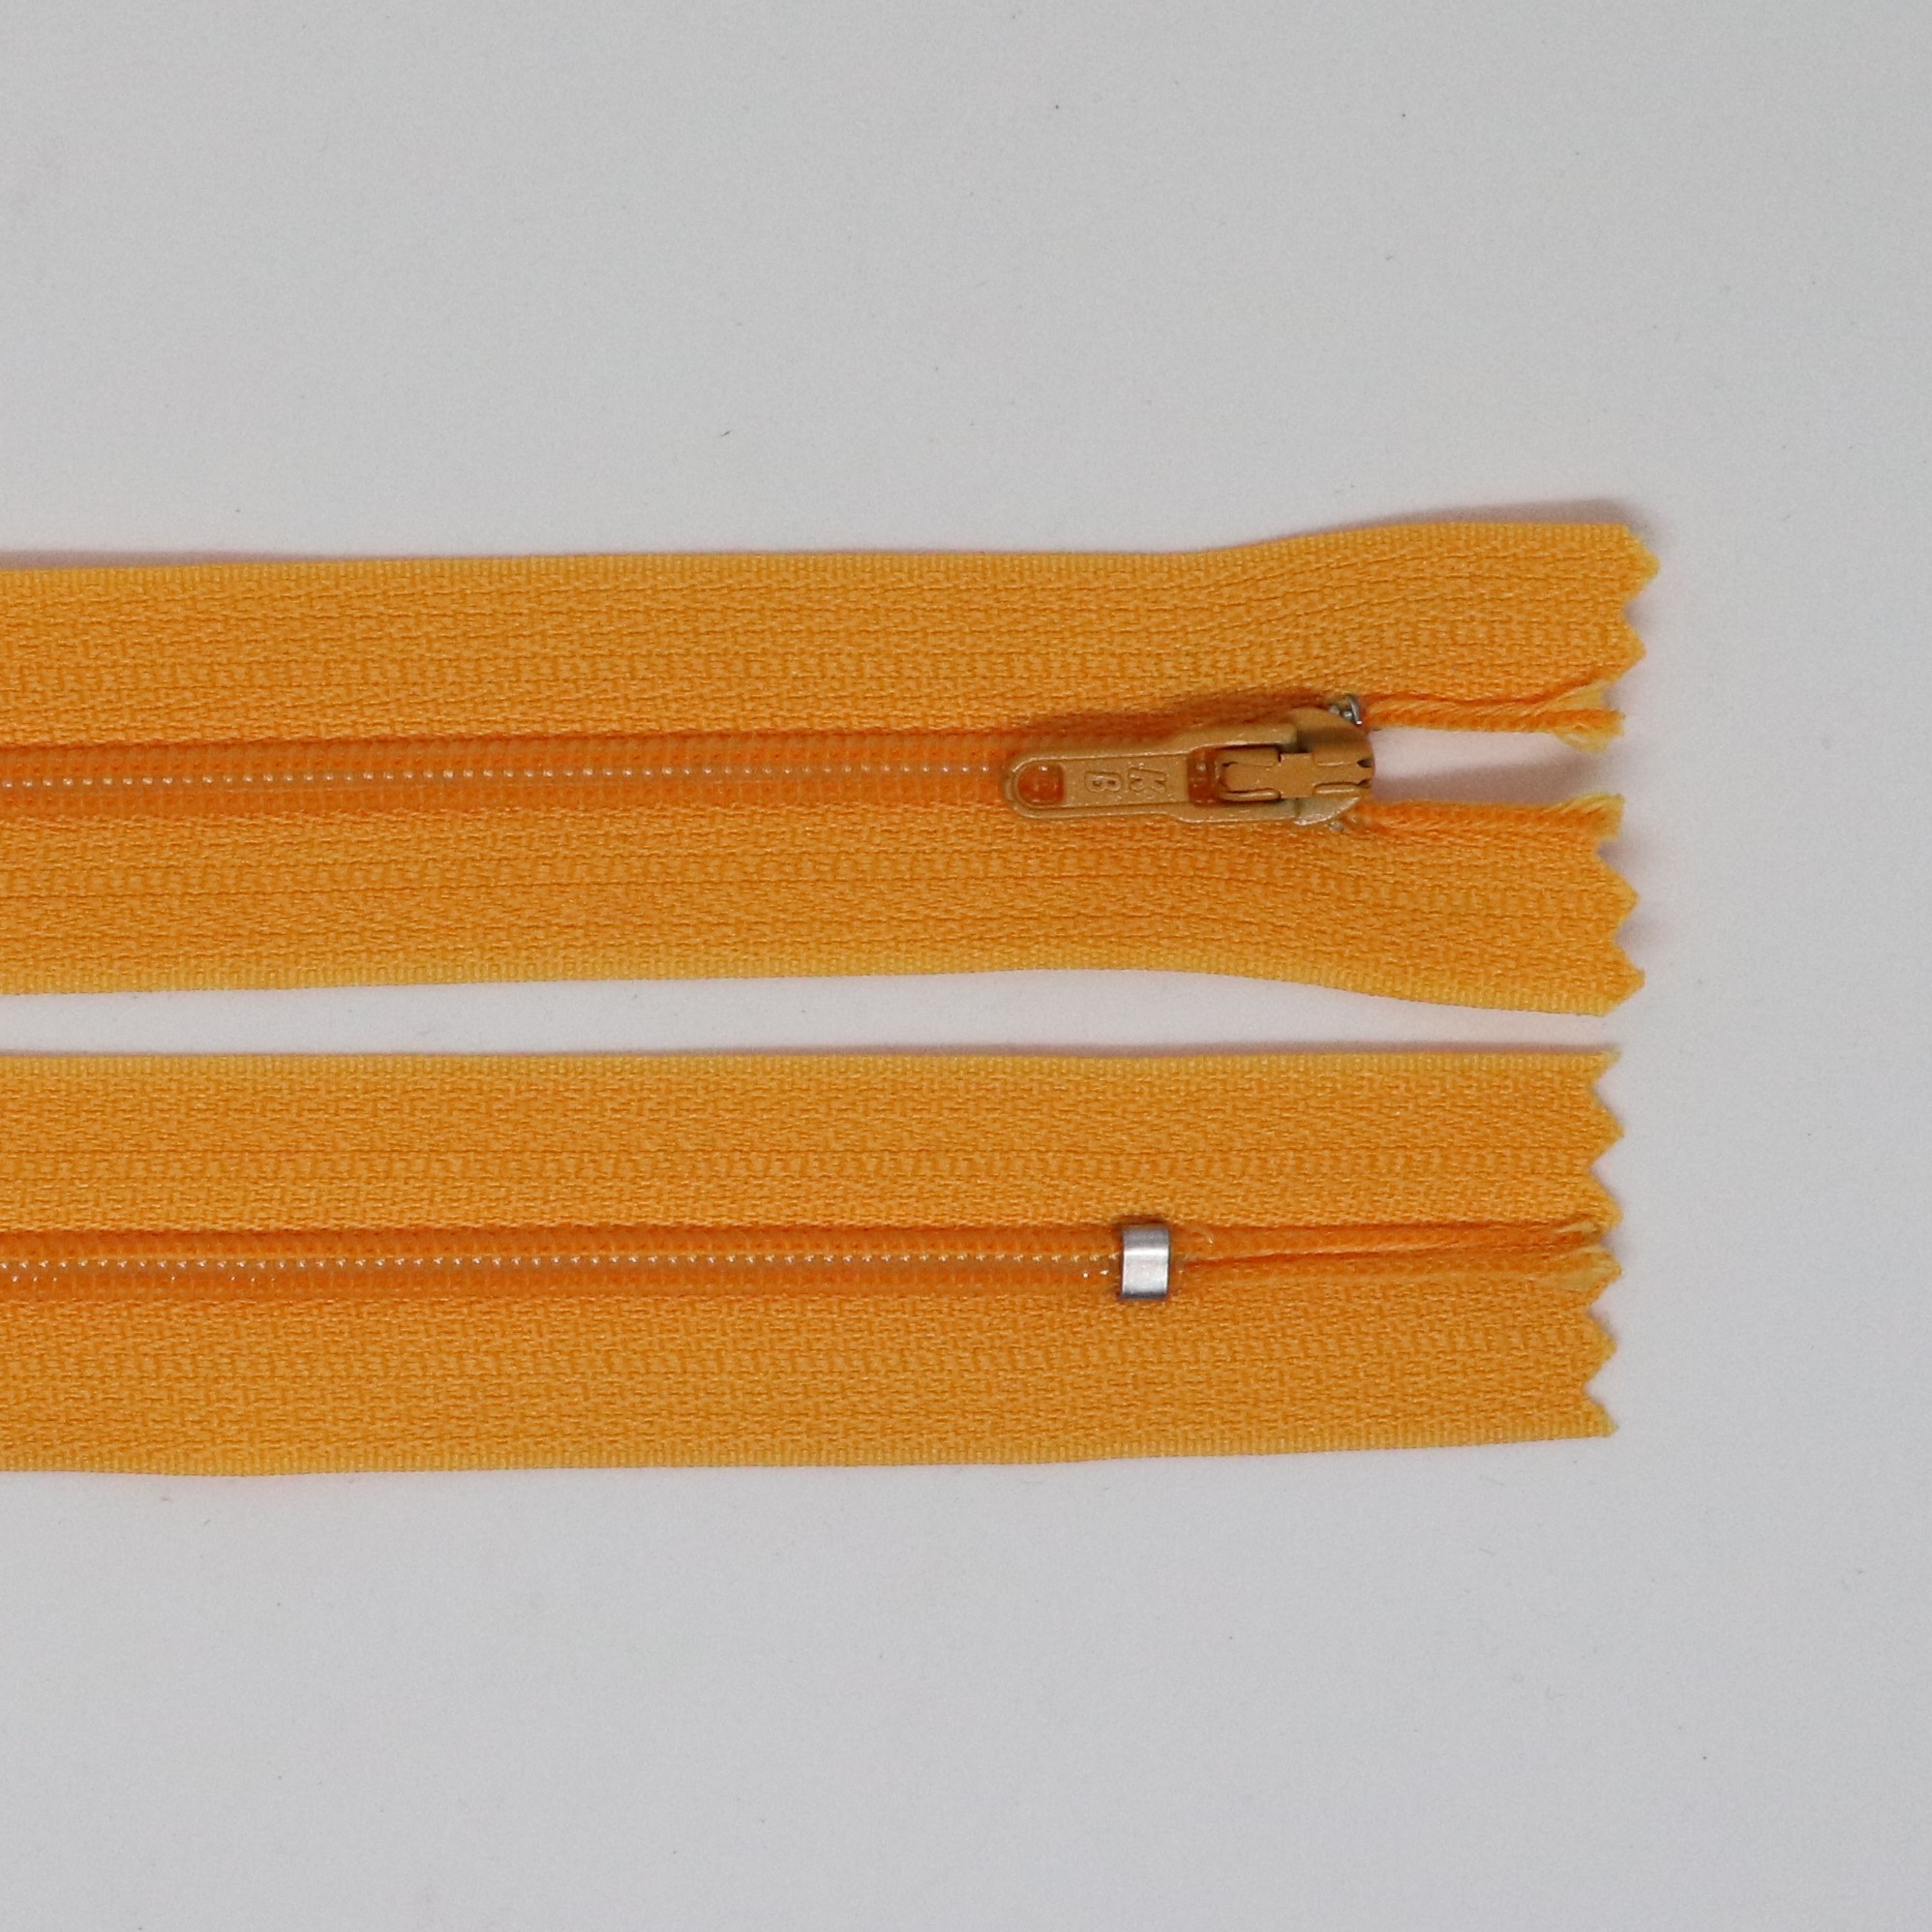 Spirálový zip, šíøe 3 mm, délka 60 cm, oranžová - zvìtšit obrázek